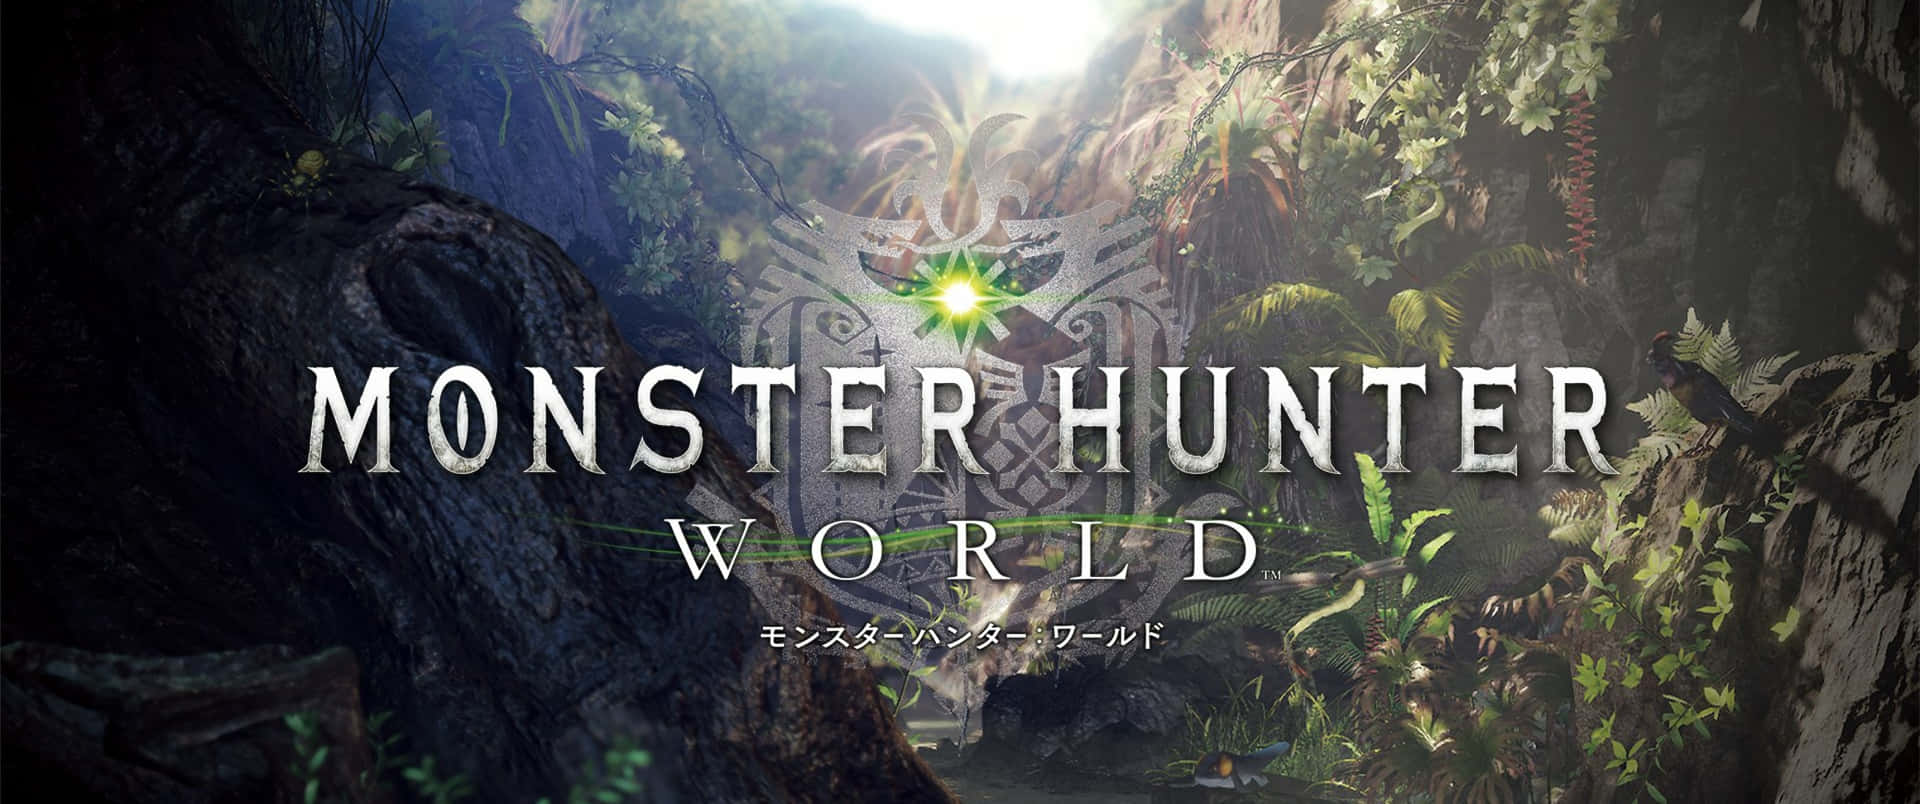 3440x1440pmonster Hunter World Hintergrund Spielcover